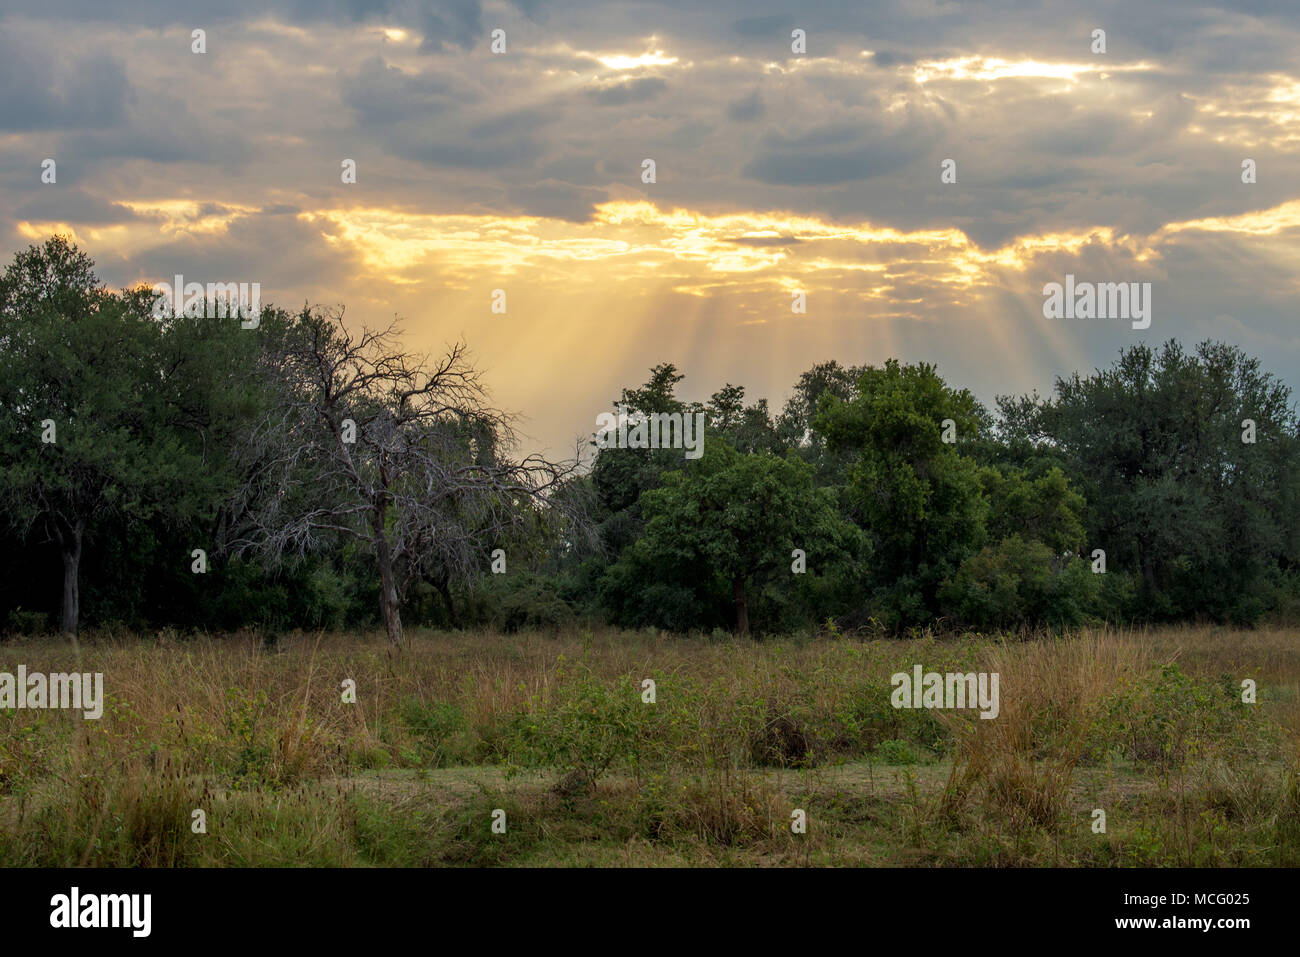 De beaux rayons de soleil qui brille à travers les nuages au-dessus de la savane africaine, la Zambie Banque D'Images